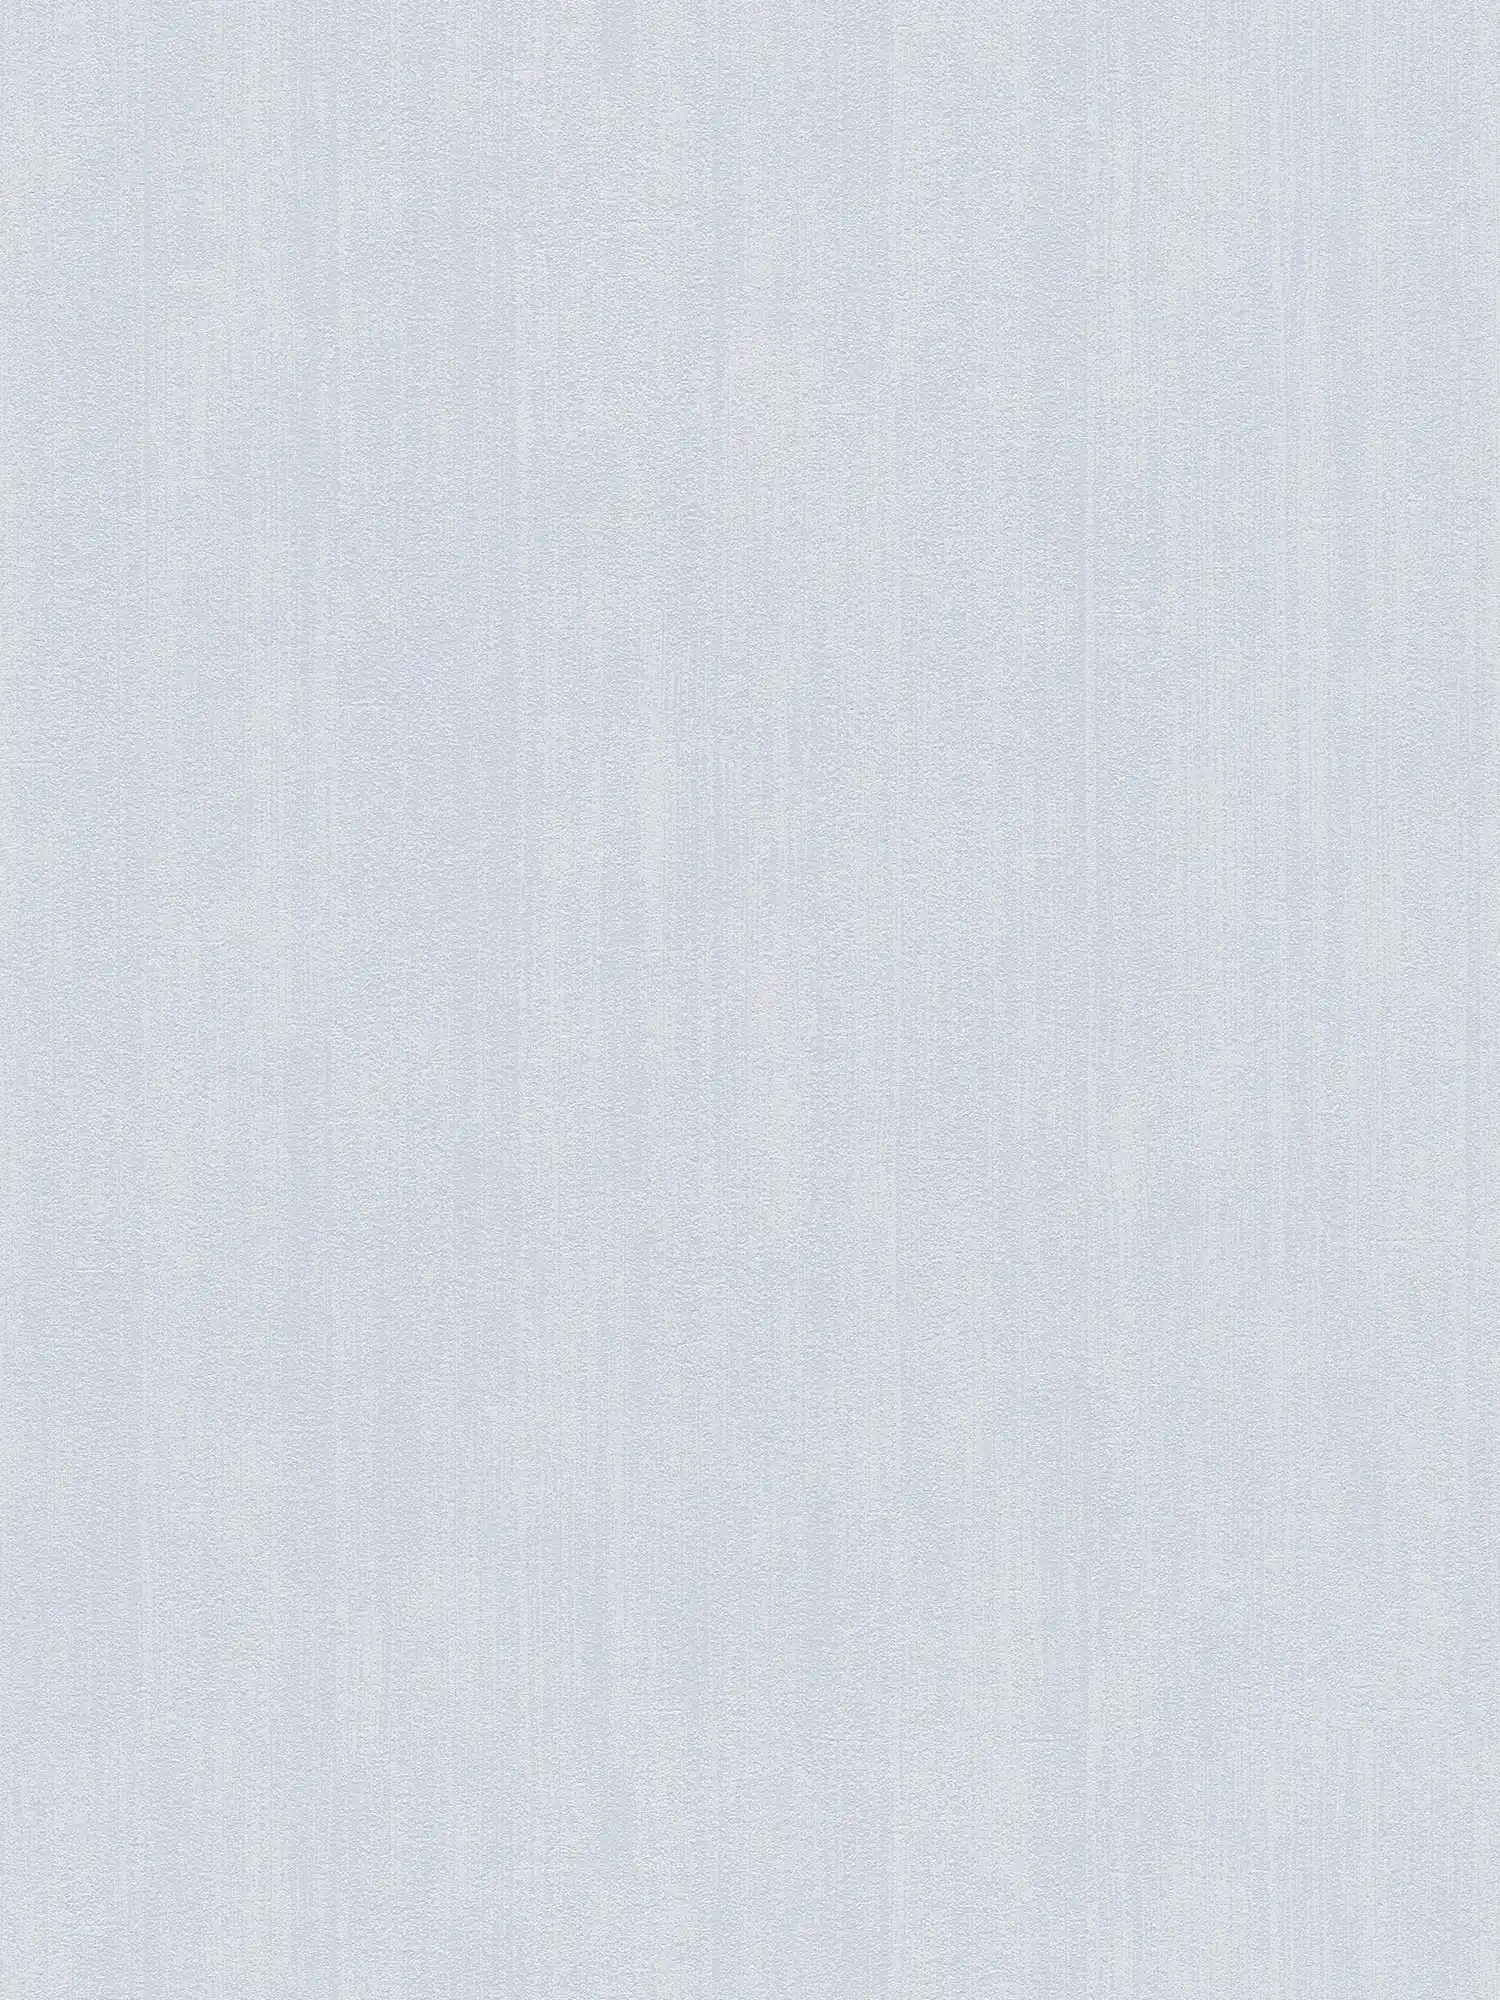 Hatch plain wallpaper with subtle texture - grey
